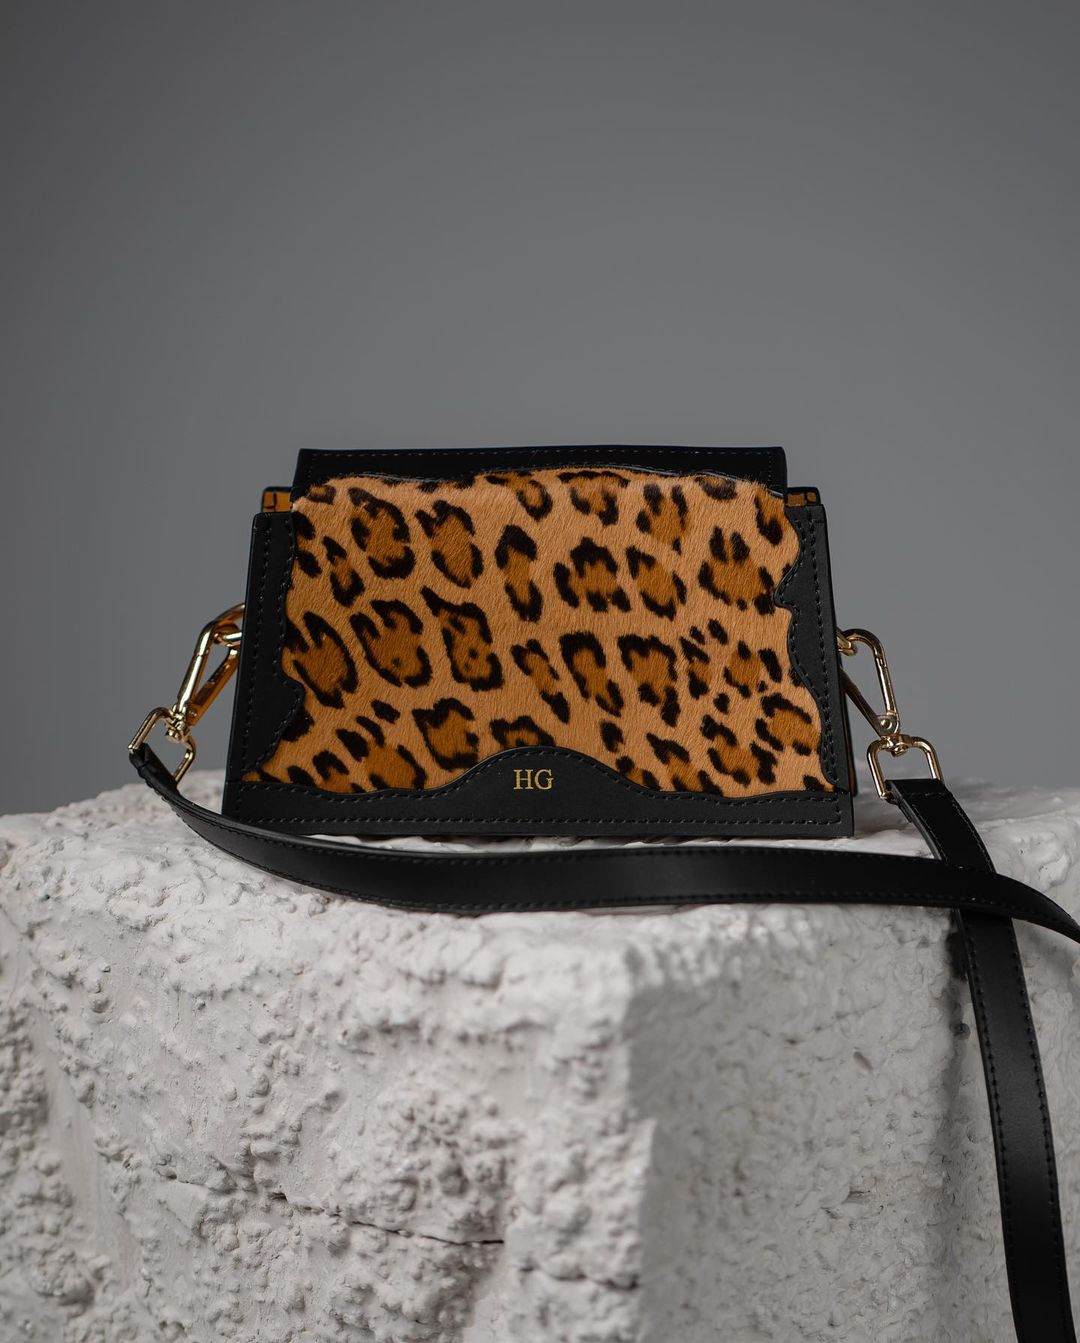 Кожаная сумка с леопардовым принтом Hugmun.